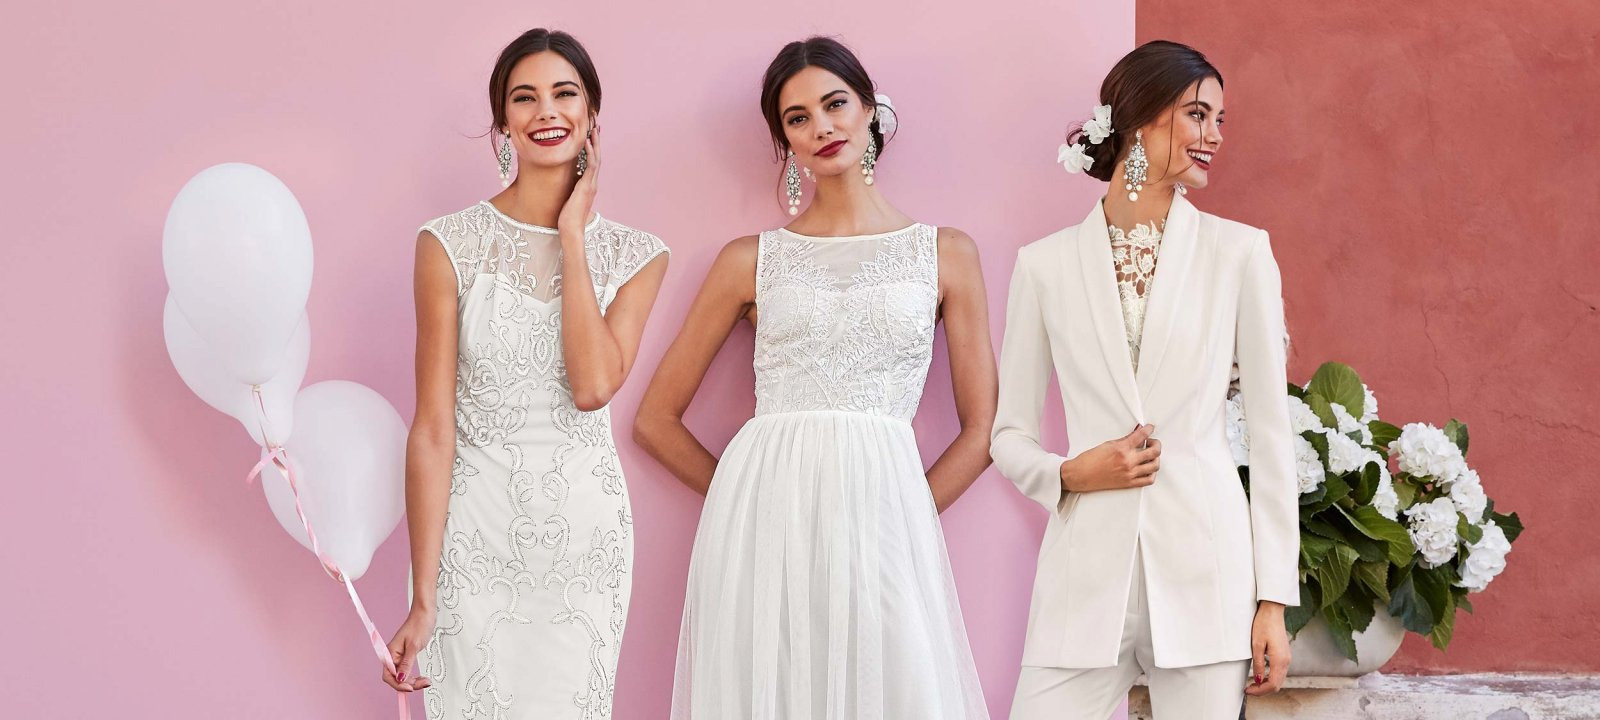 Dresscode Für Hochzeitsgäste: So Gelingt Das Perfekte Outfit